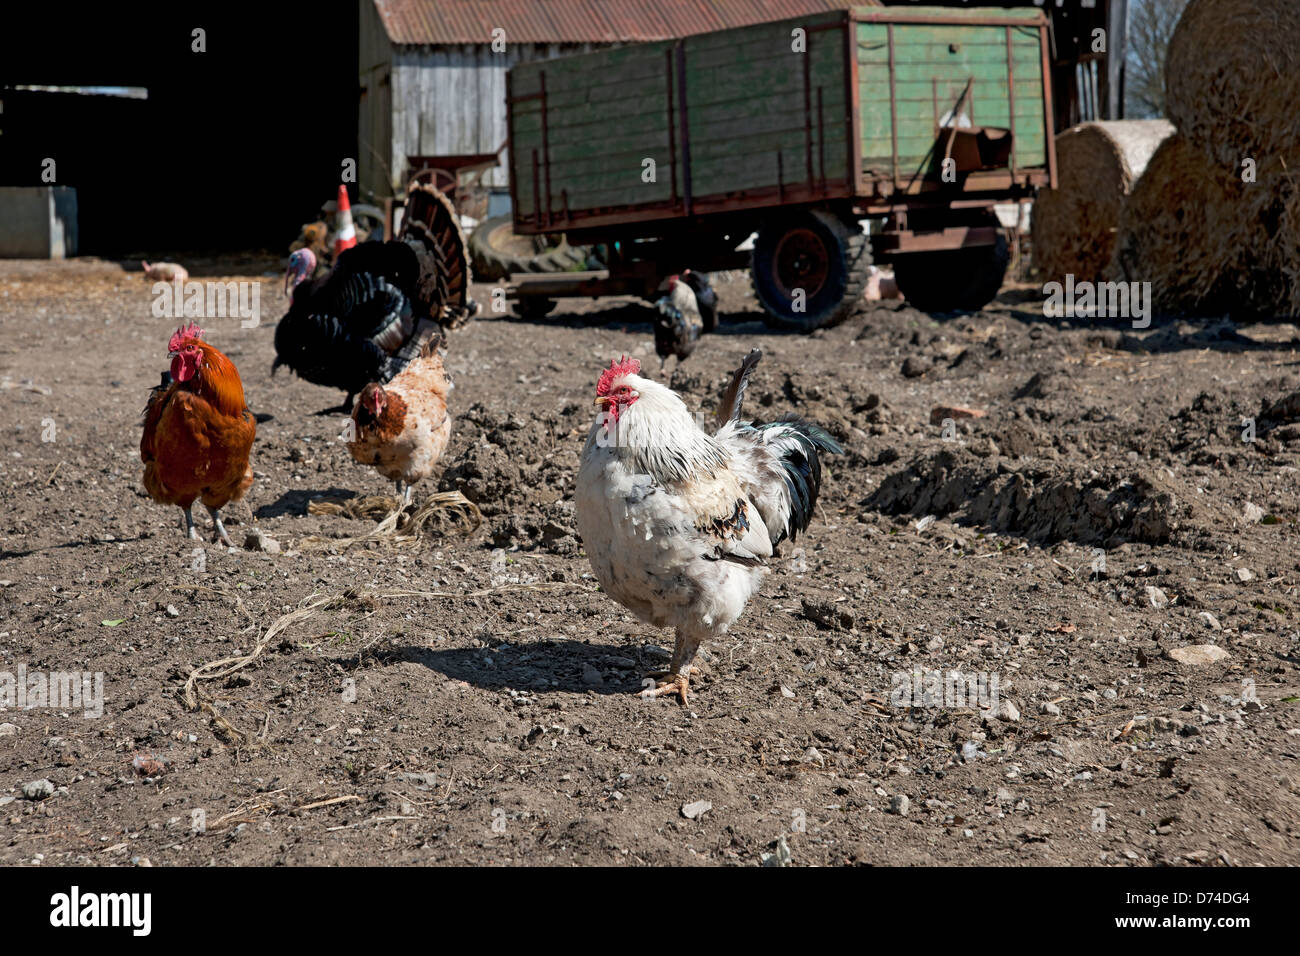 Gros plan de poulets poulets poulets poules dans une ferme volaille oiseaux North Yorkshire Angleterre Royaume-Uni GB Grande-Bretagne Banque D'Images